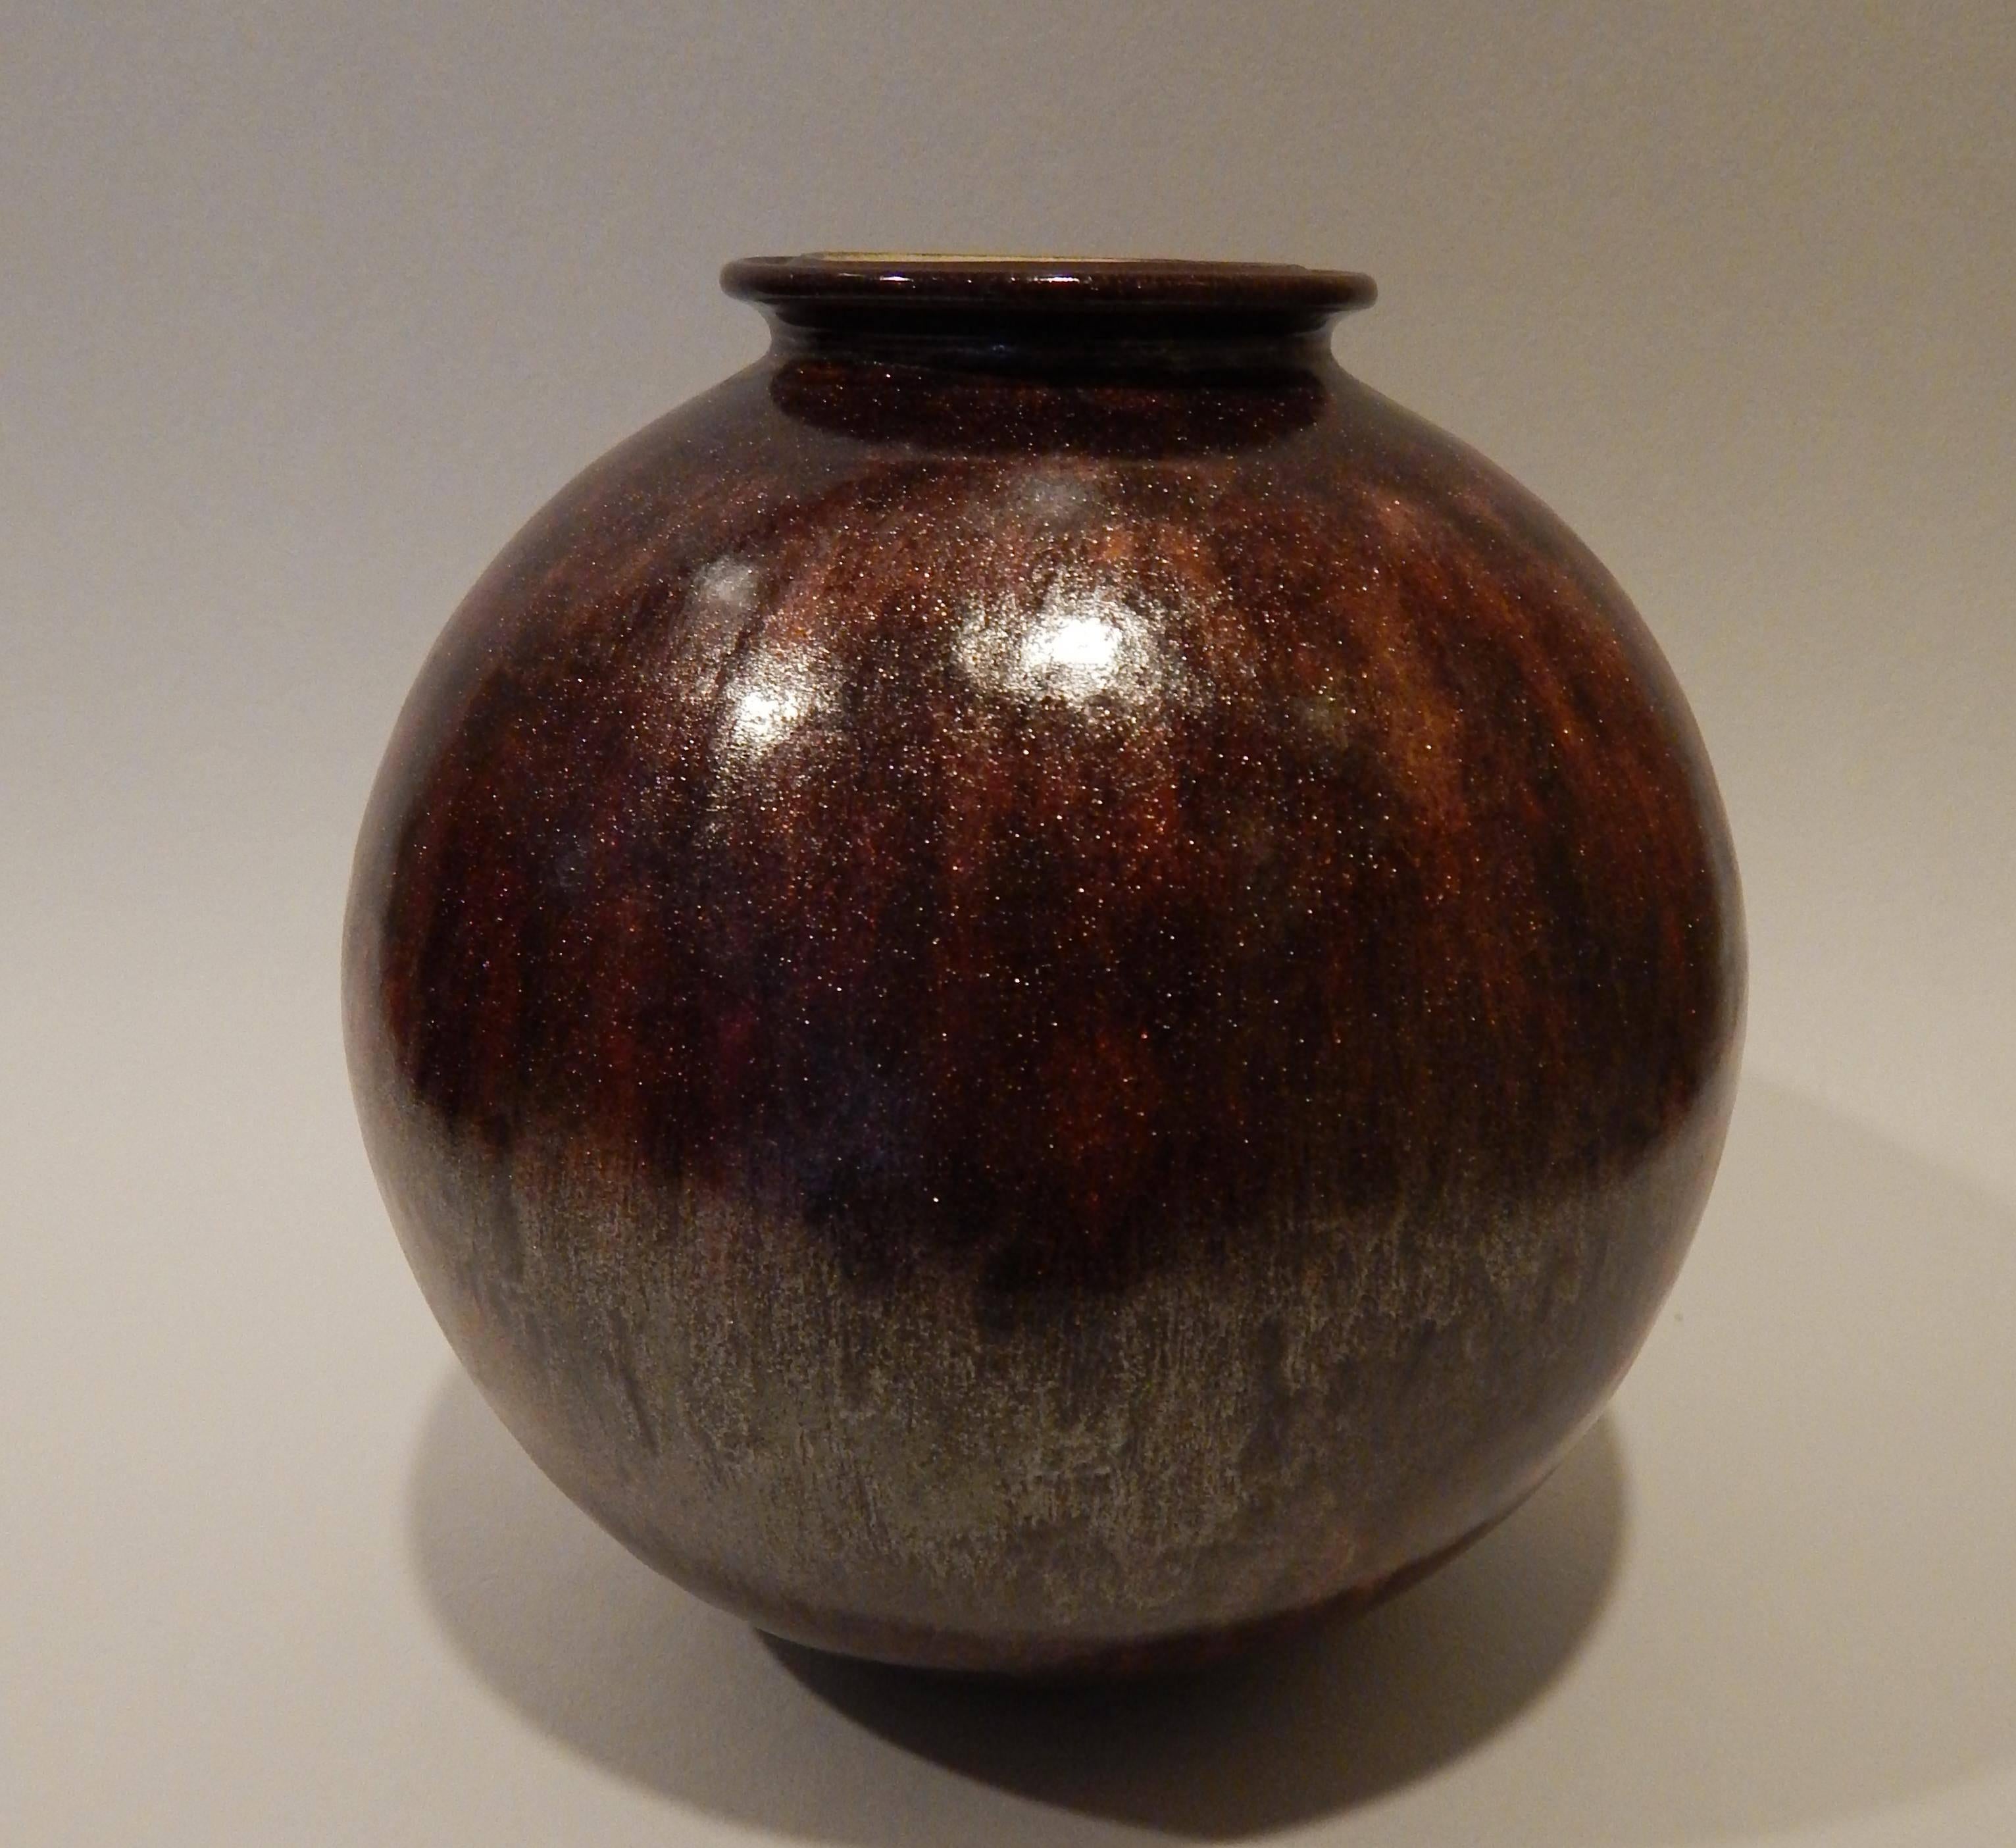 James Lovera (1920-2015) Keramik-Studio-Vase.
Diese schöne Vase von James Lovera hat eine wunderbare
und ungewöhnliche kupferfarbene Glasur und stammt aus den 1960er Jahren,
vielleicht schon in den 1950er Jahren.
In ausgezeichnetem Zustand und